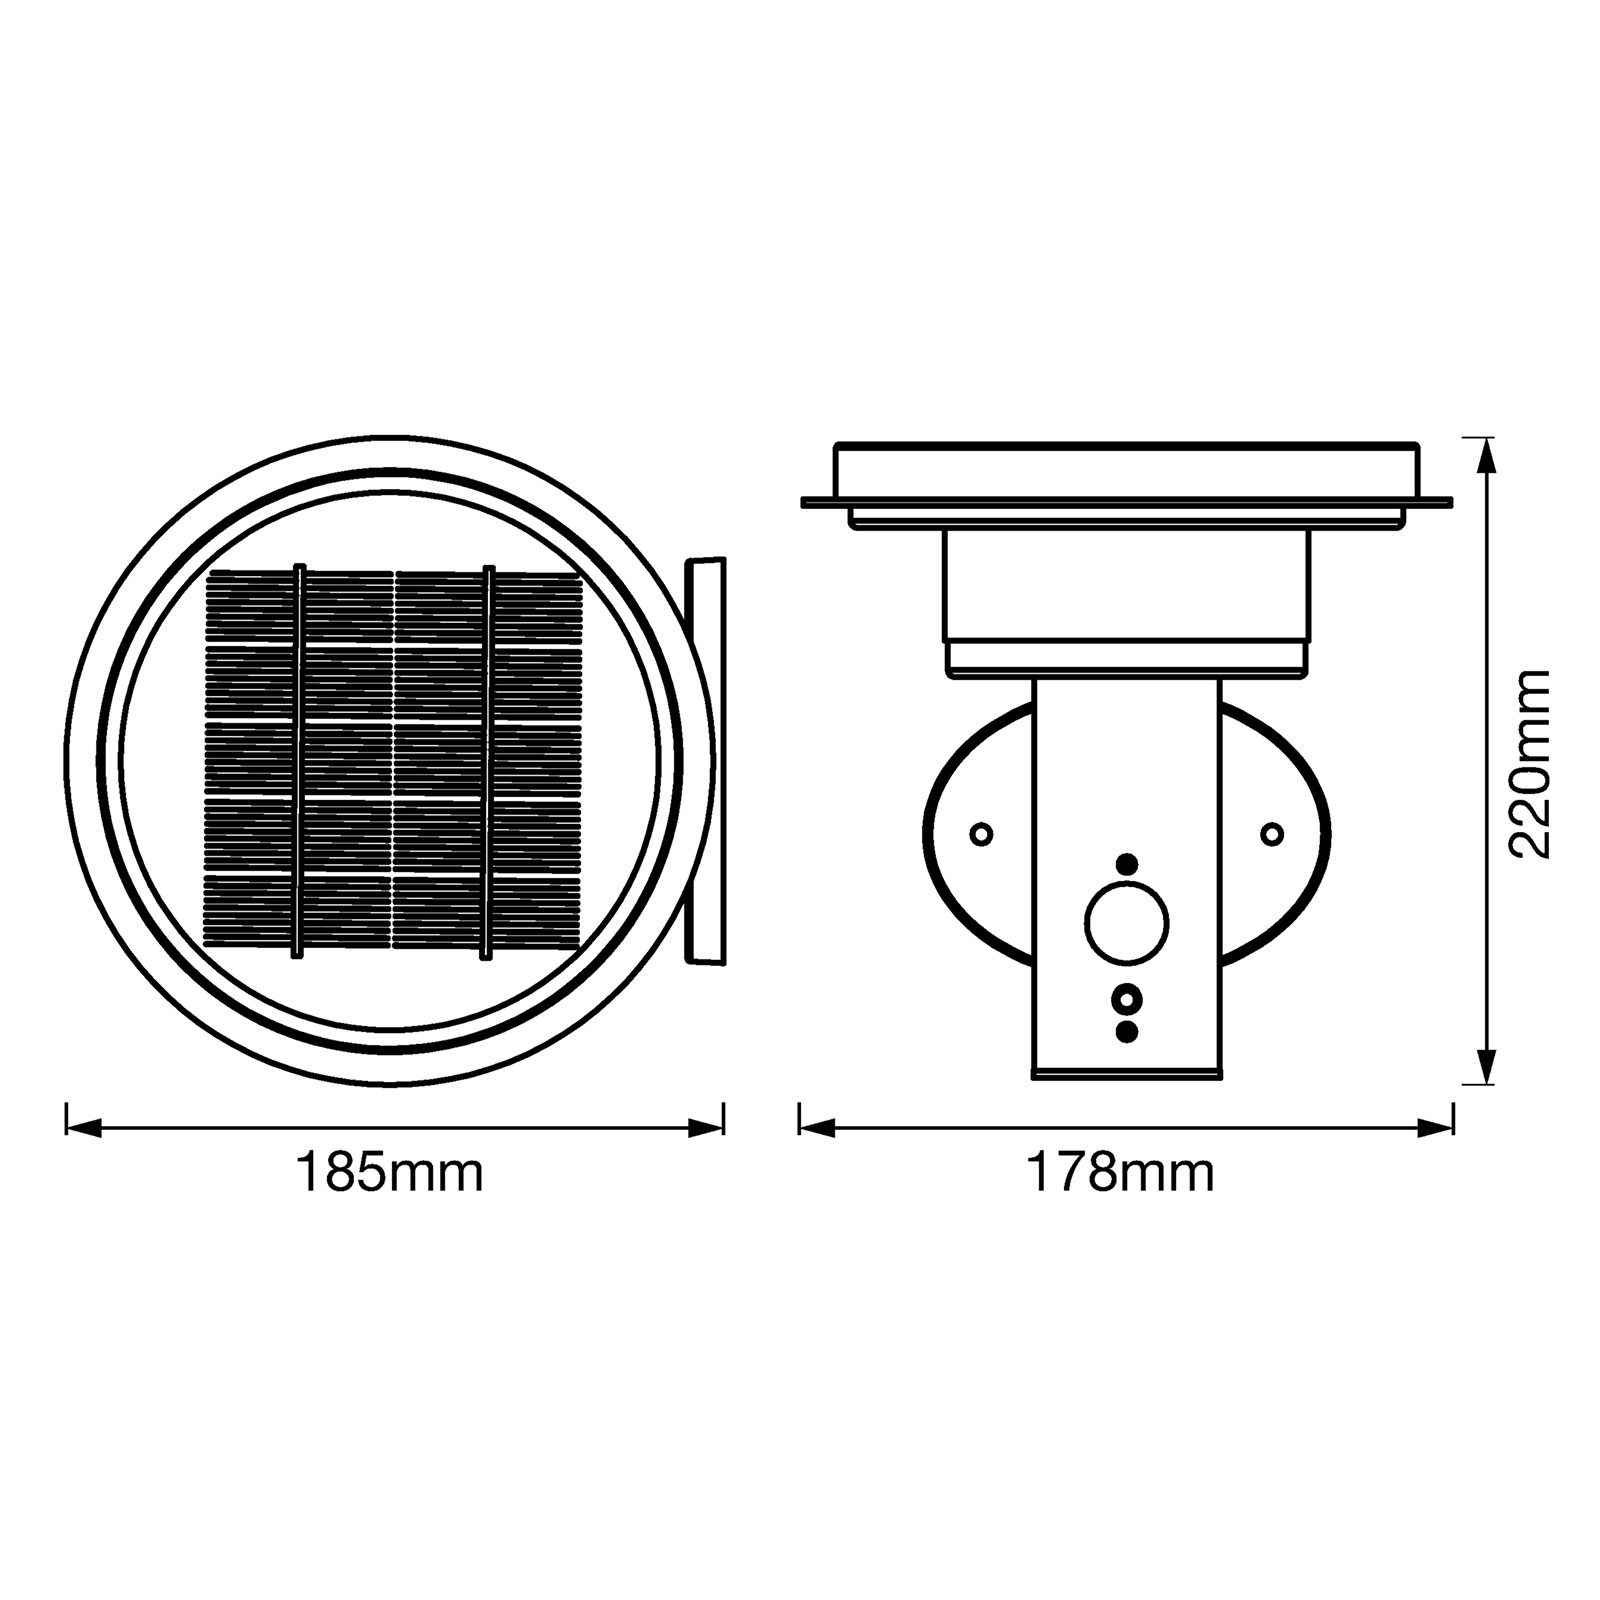 LEDVANCE Endura Solar Double Circle parete acciaio